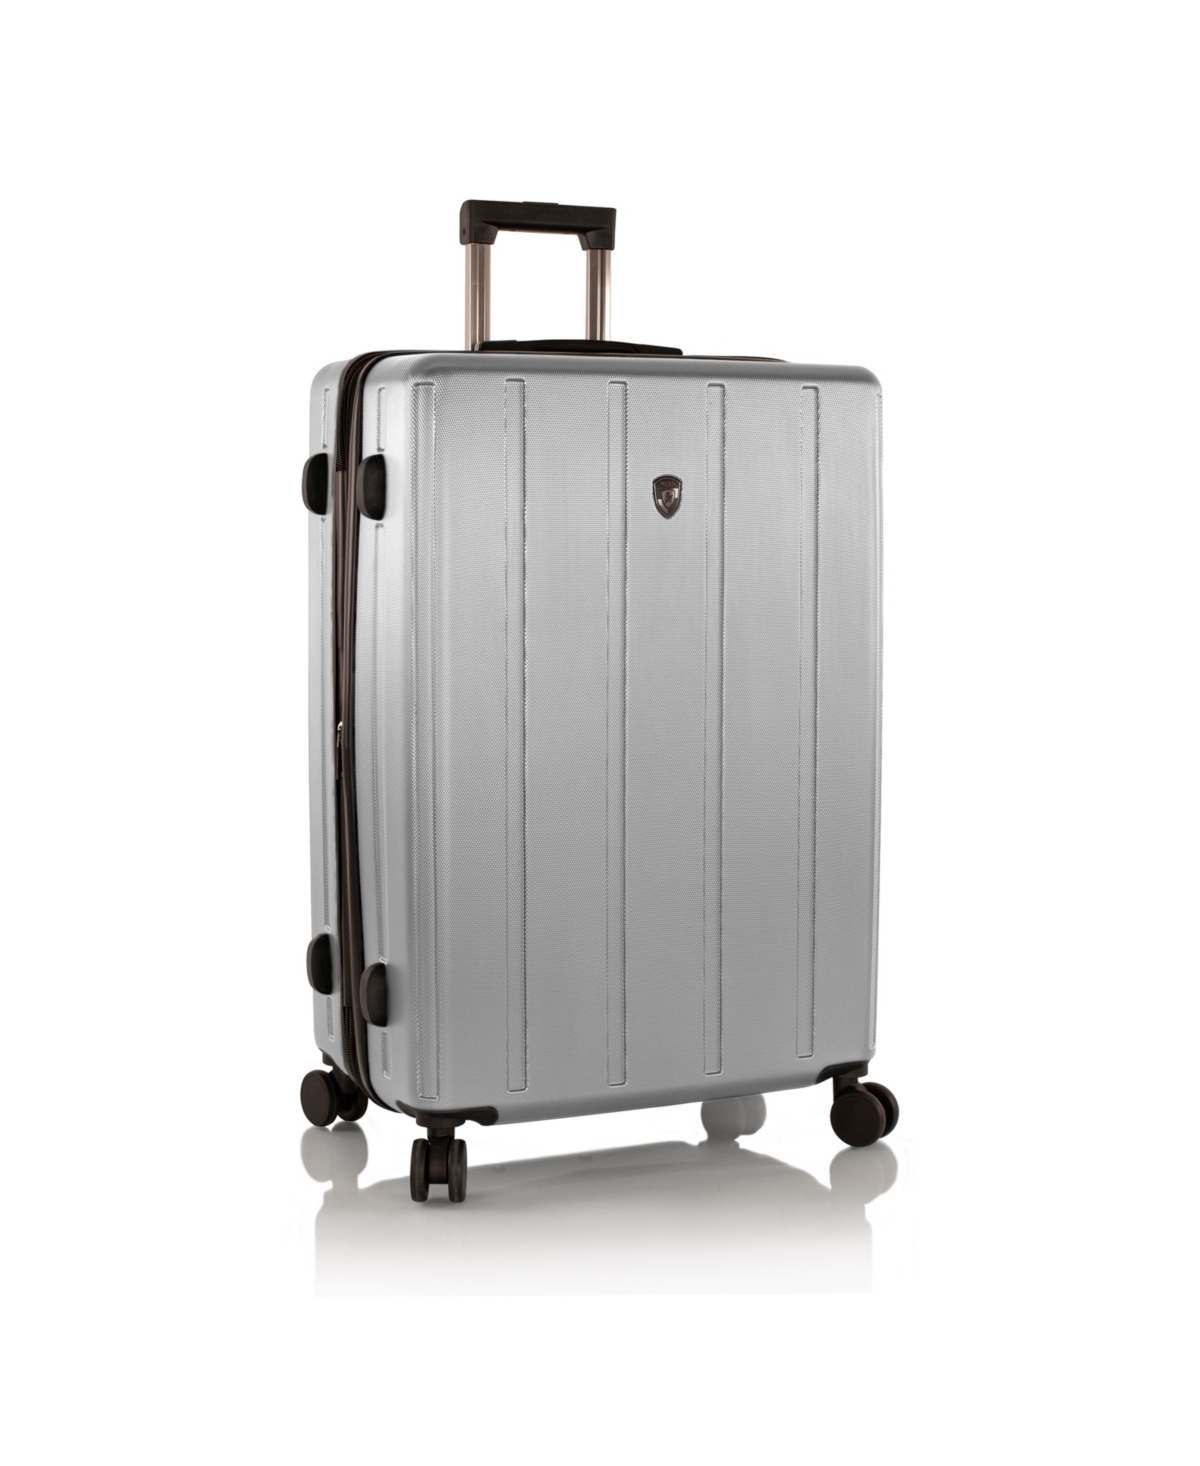 SpinLite 30" Hardside Spinner Luggage - Silver